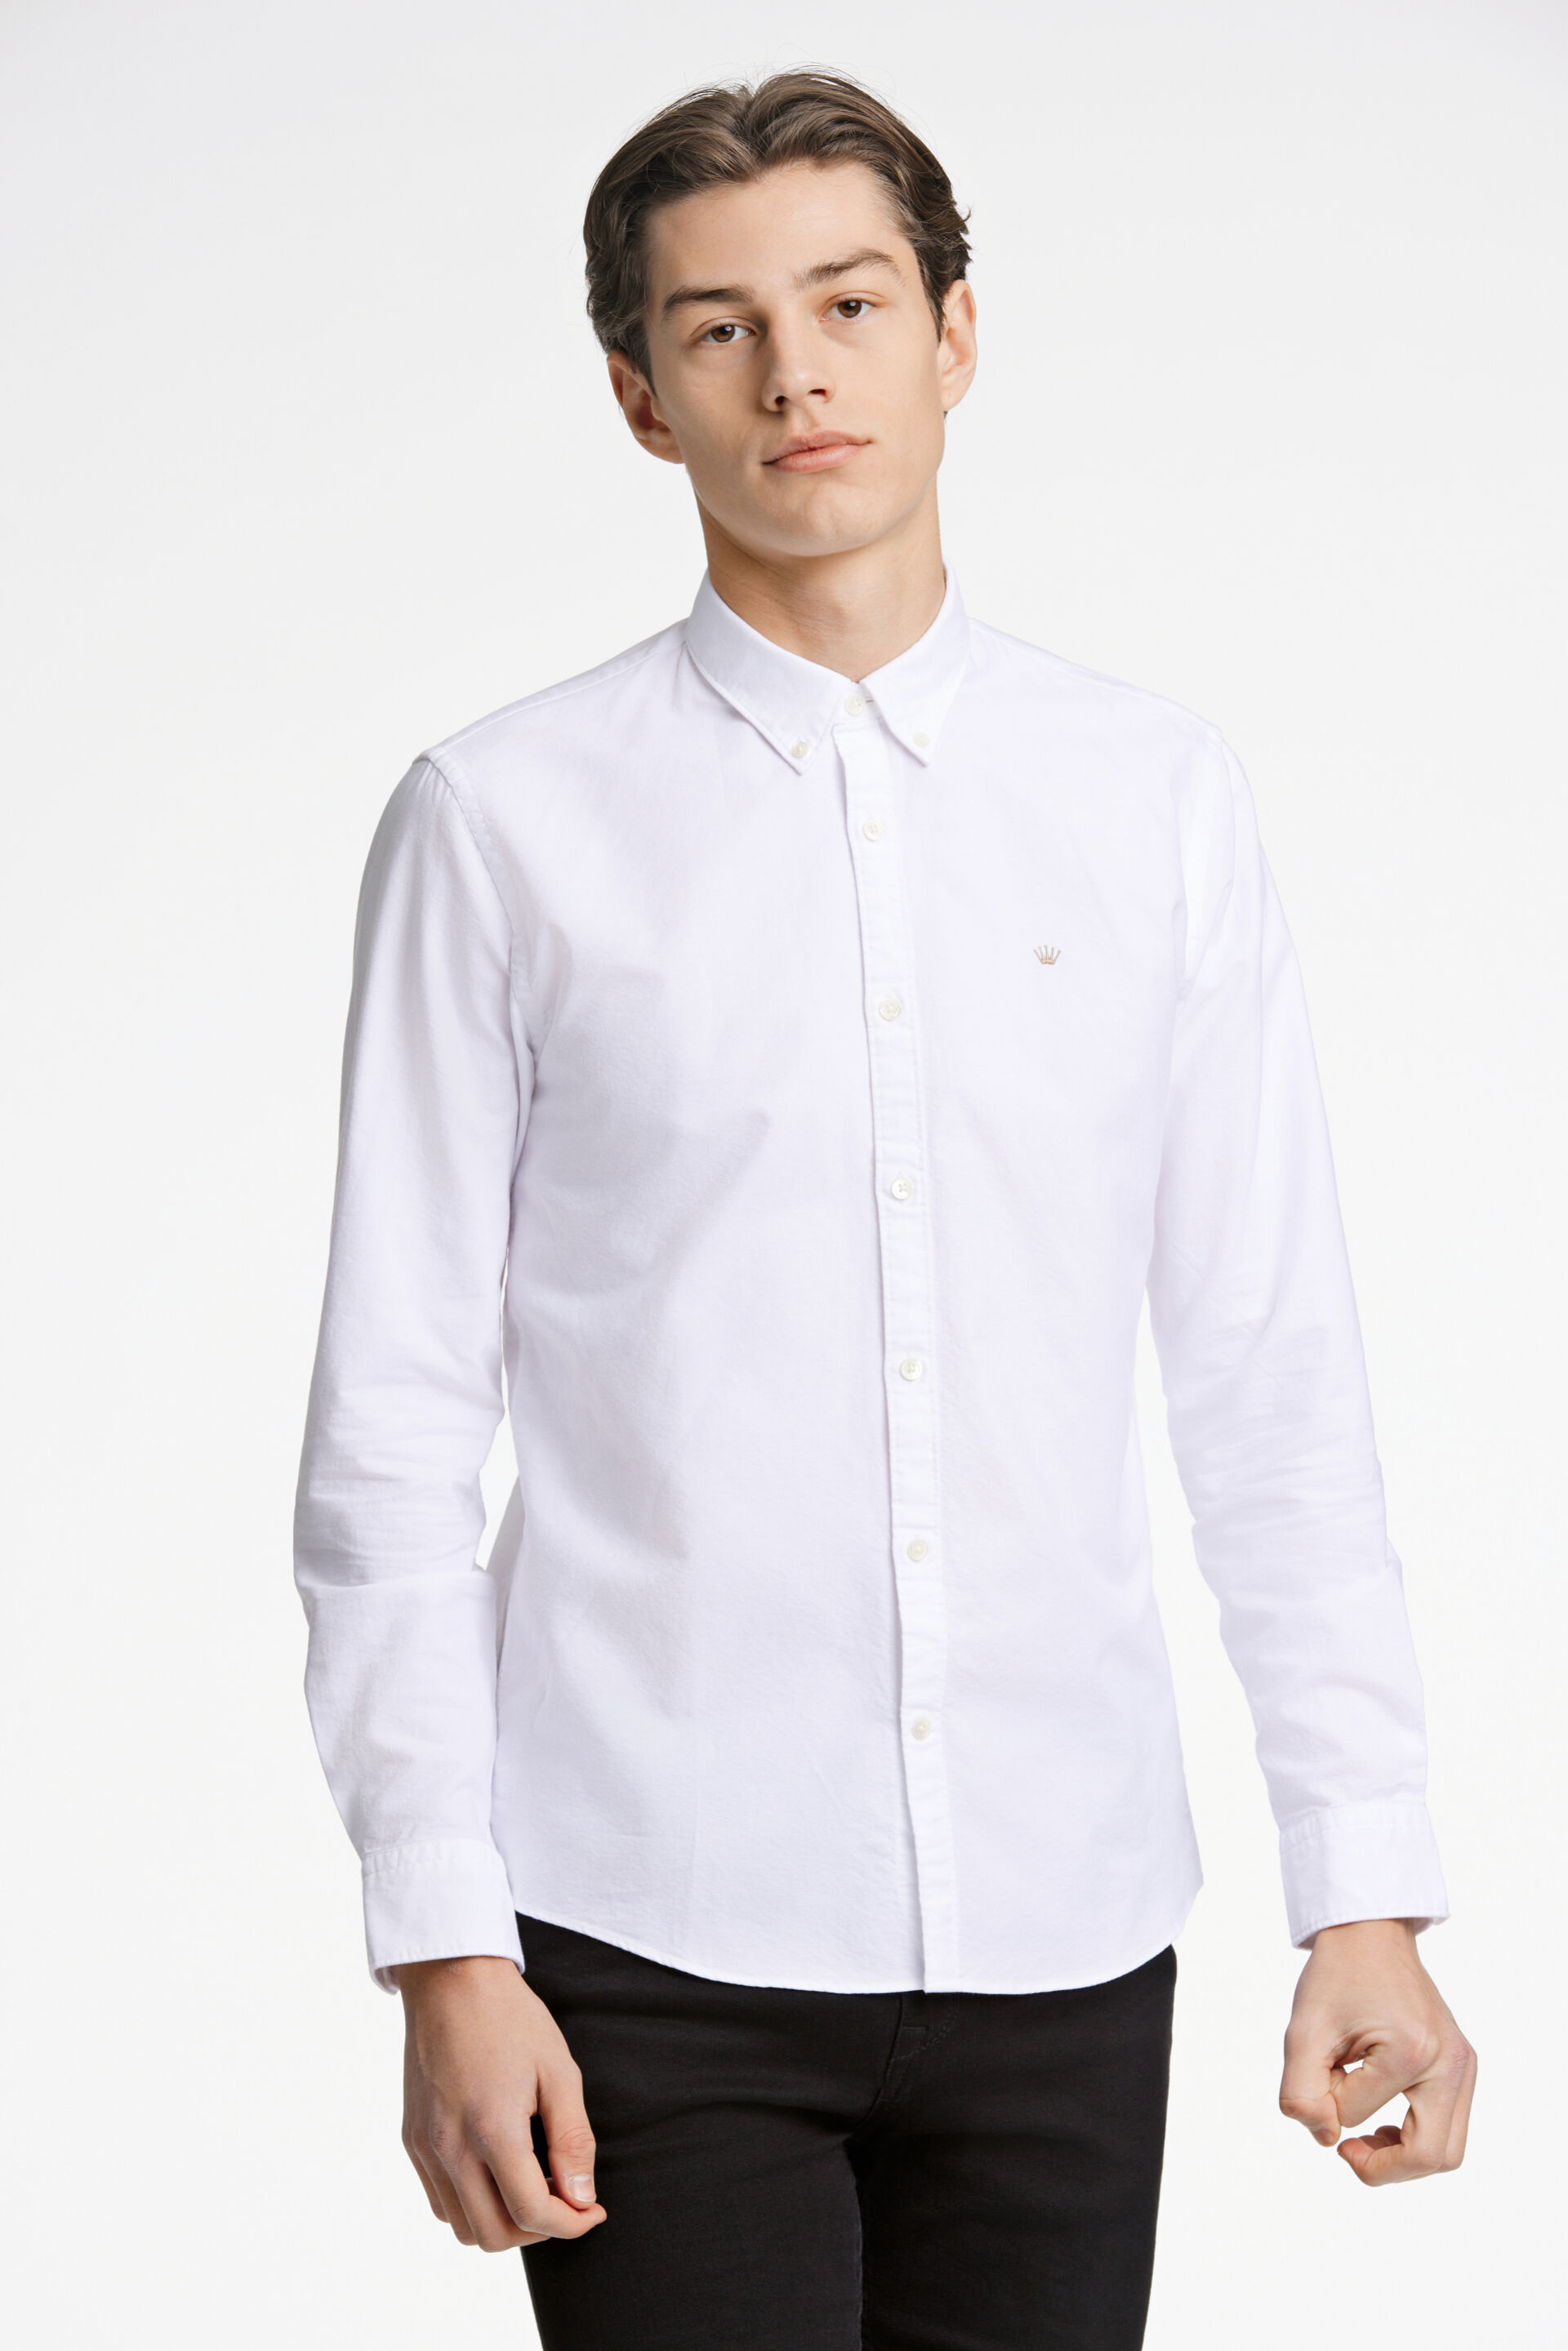 Oxford skjorte Oxford skjorte Hvid 60-205020